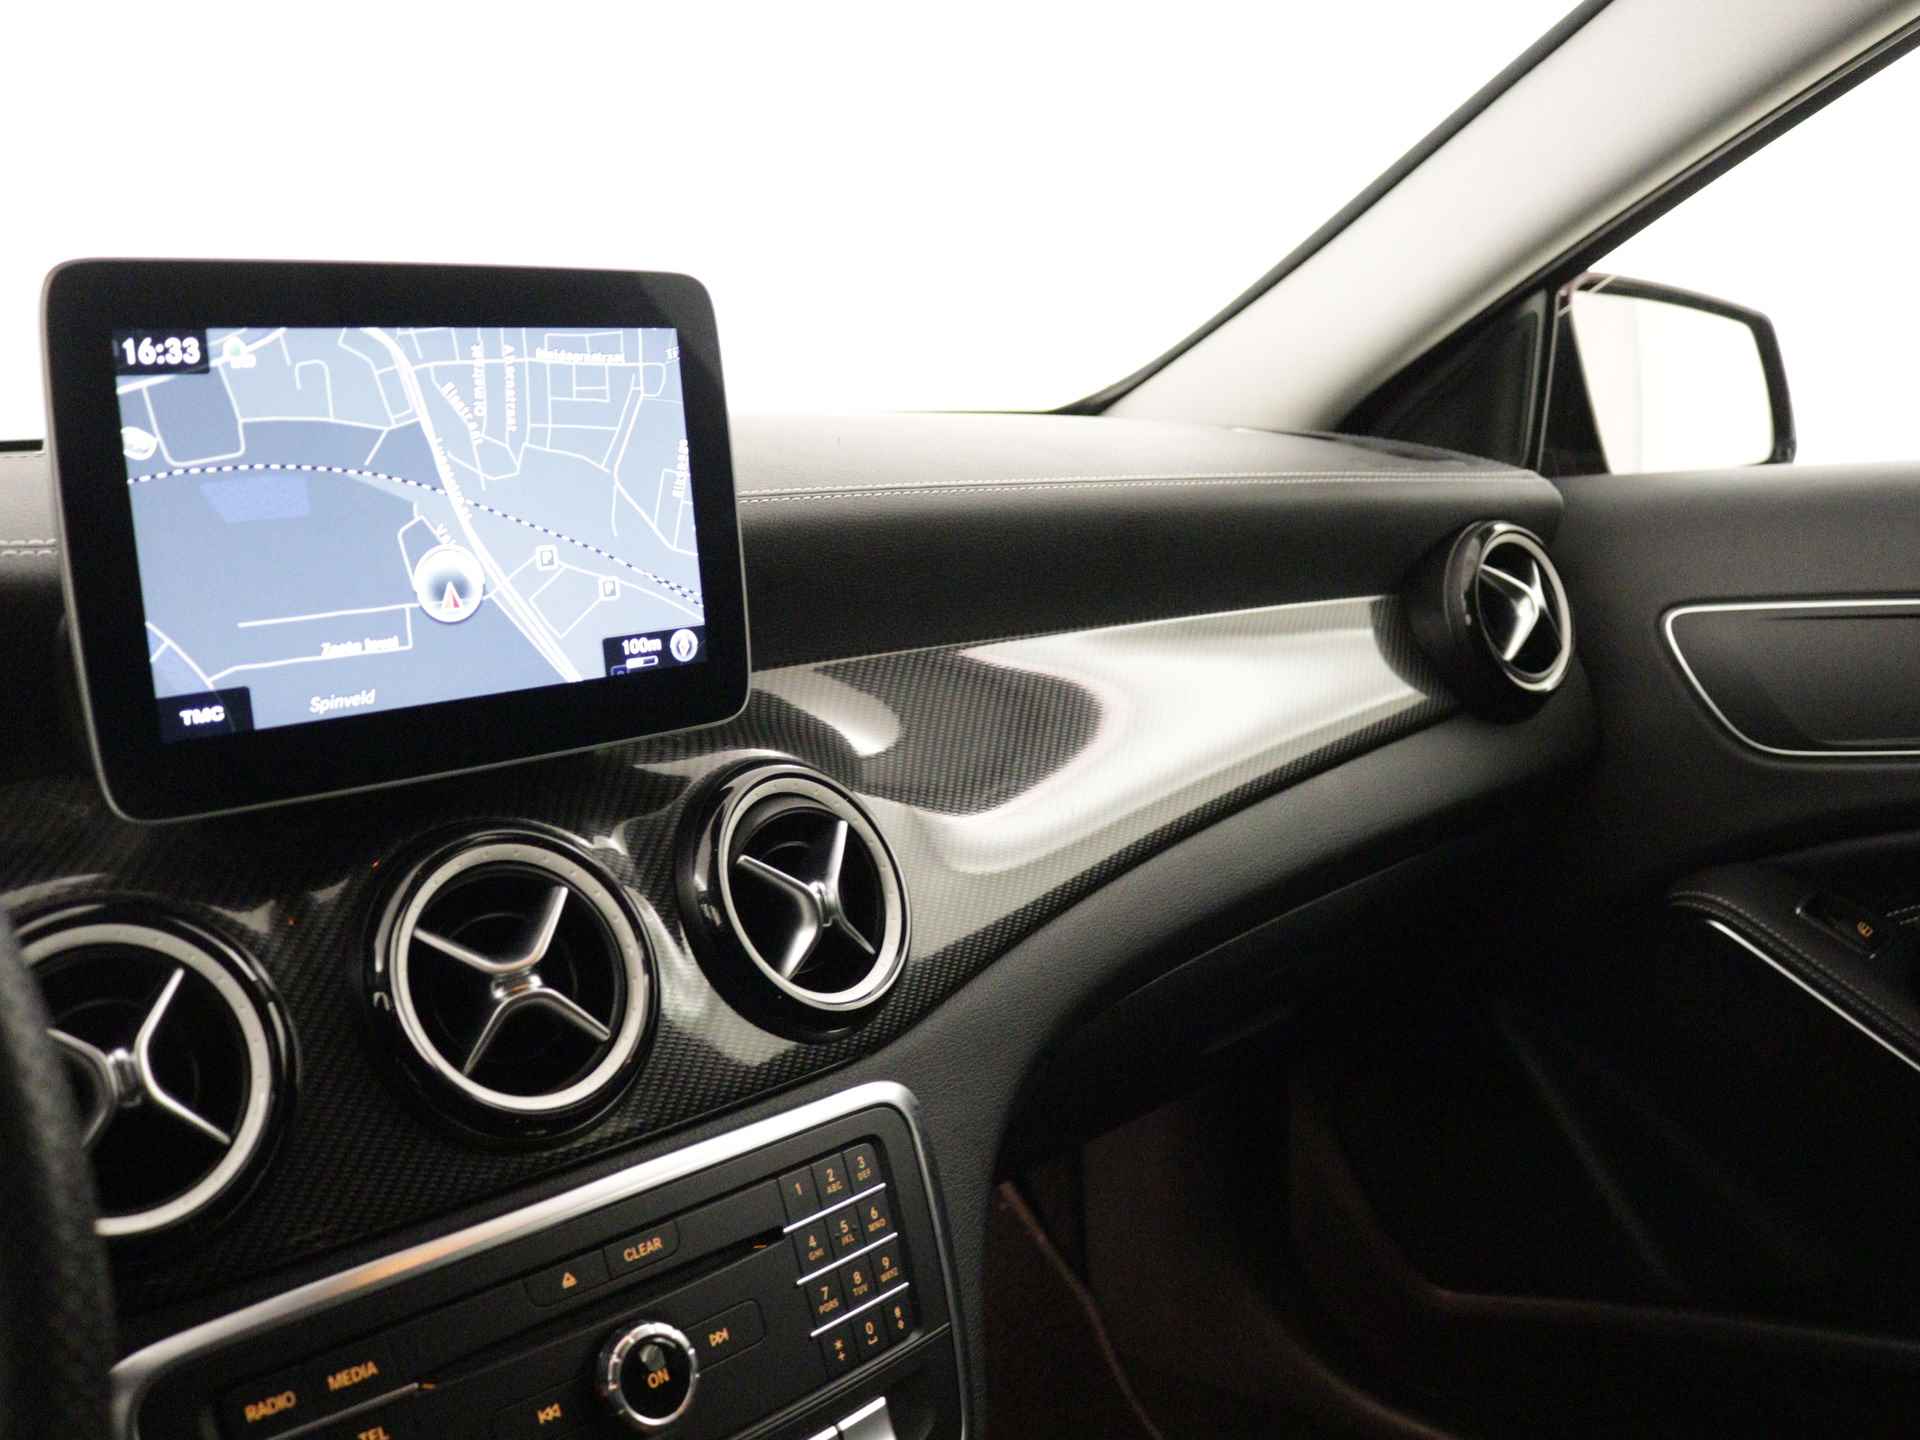 Mercedes-Benz GLA 200 AMG Premium Plus Limited | Multispaaks lichtmetalen velgen | Treeplanken | Navigatie | Parking support | Leder bekleding | inclusief 24 maanden MB Certified garantie voor europa - 7/39